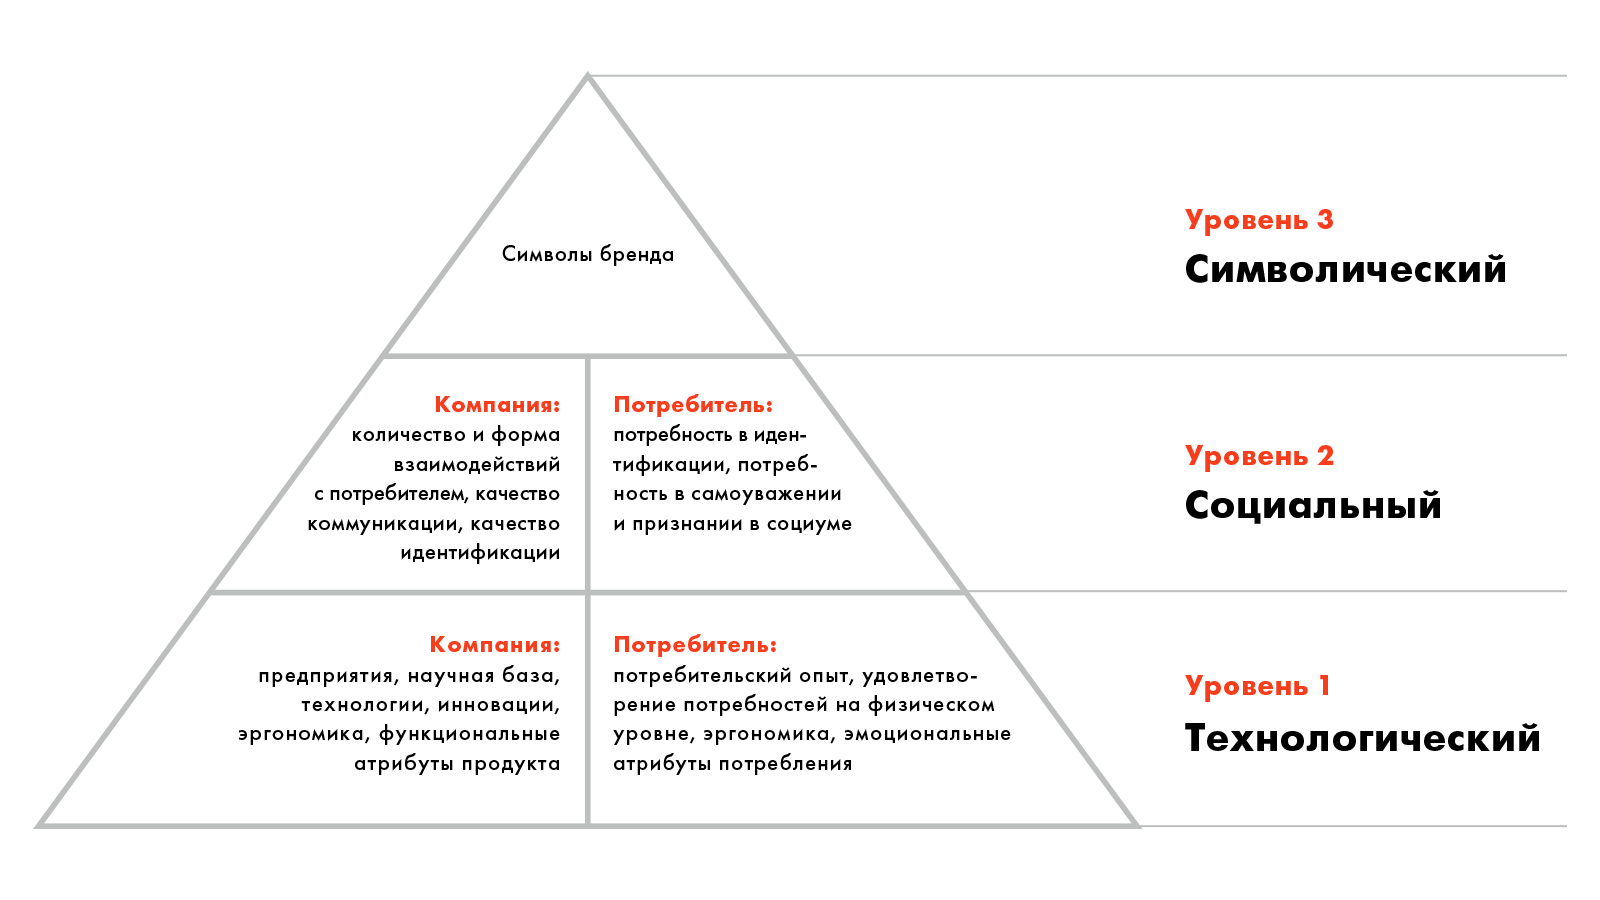 пирамида номинализации капитала бренда